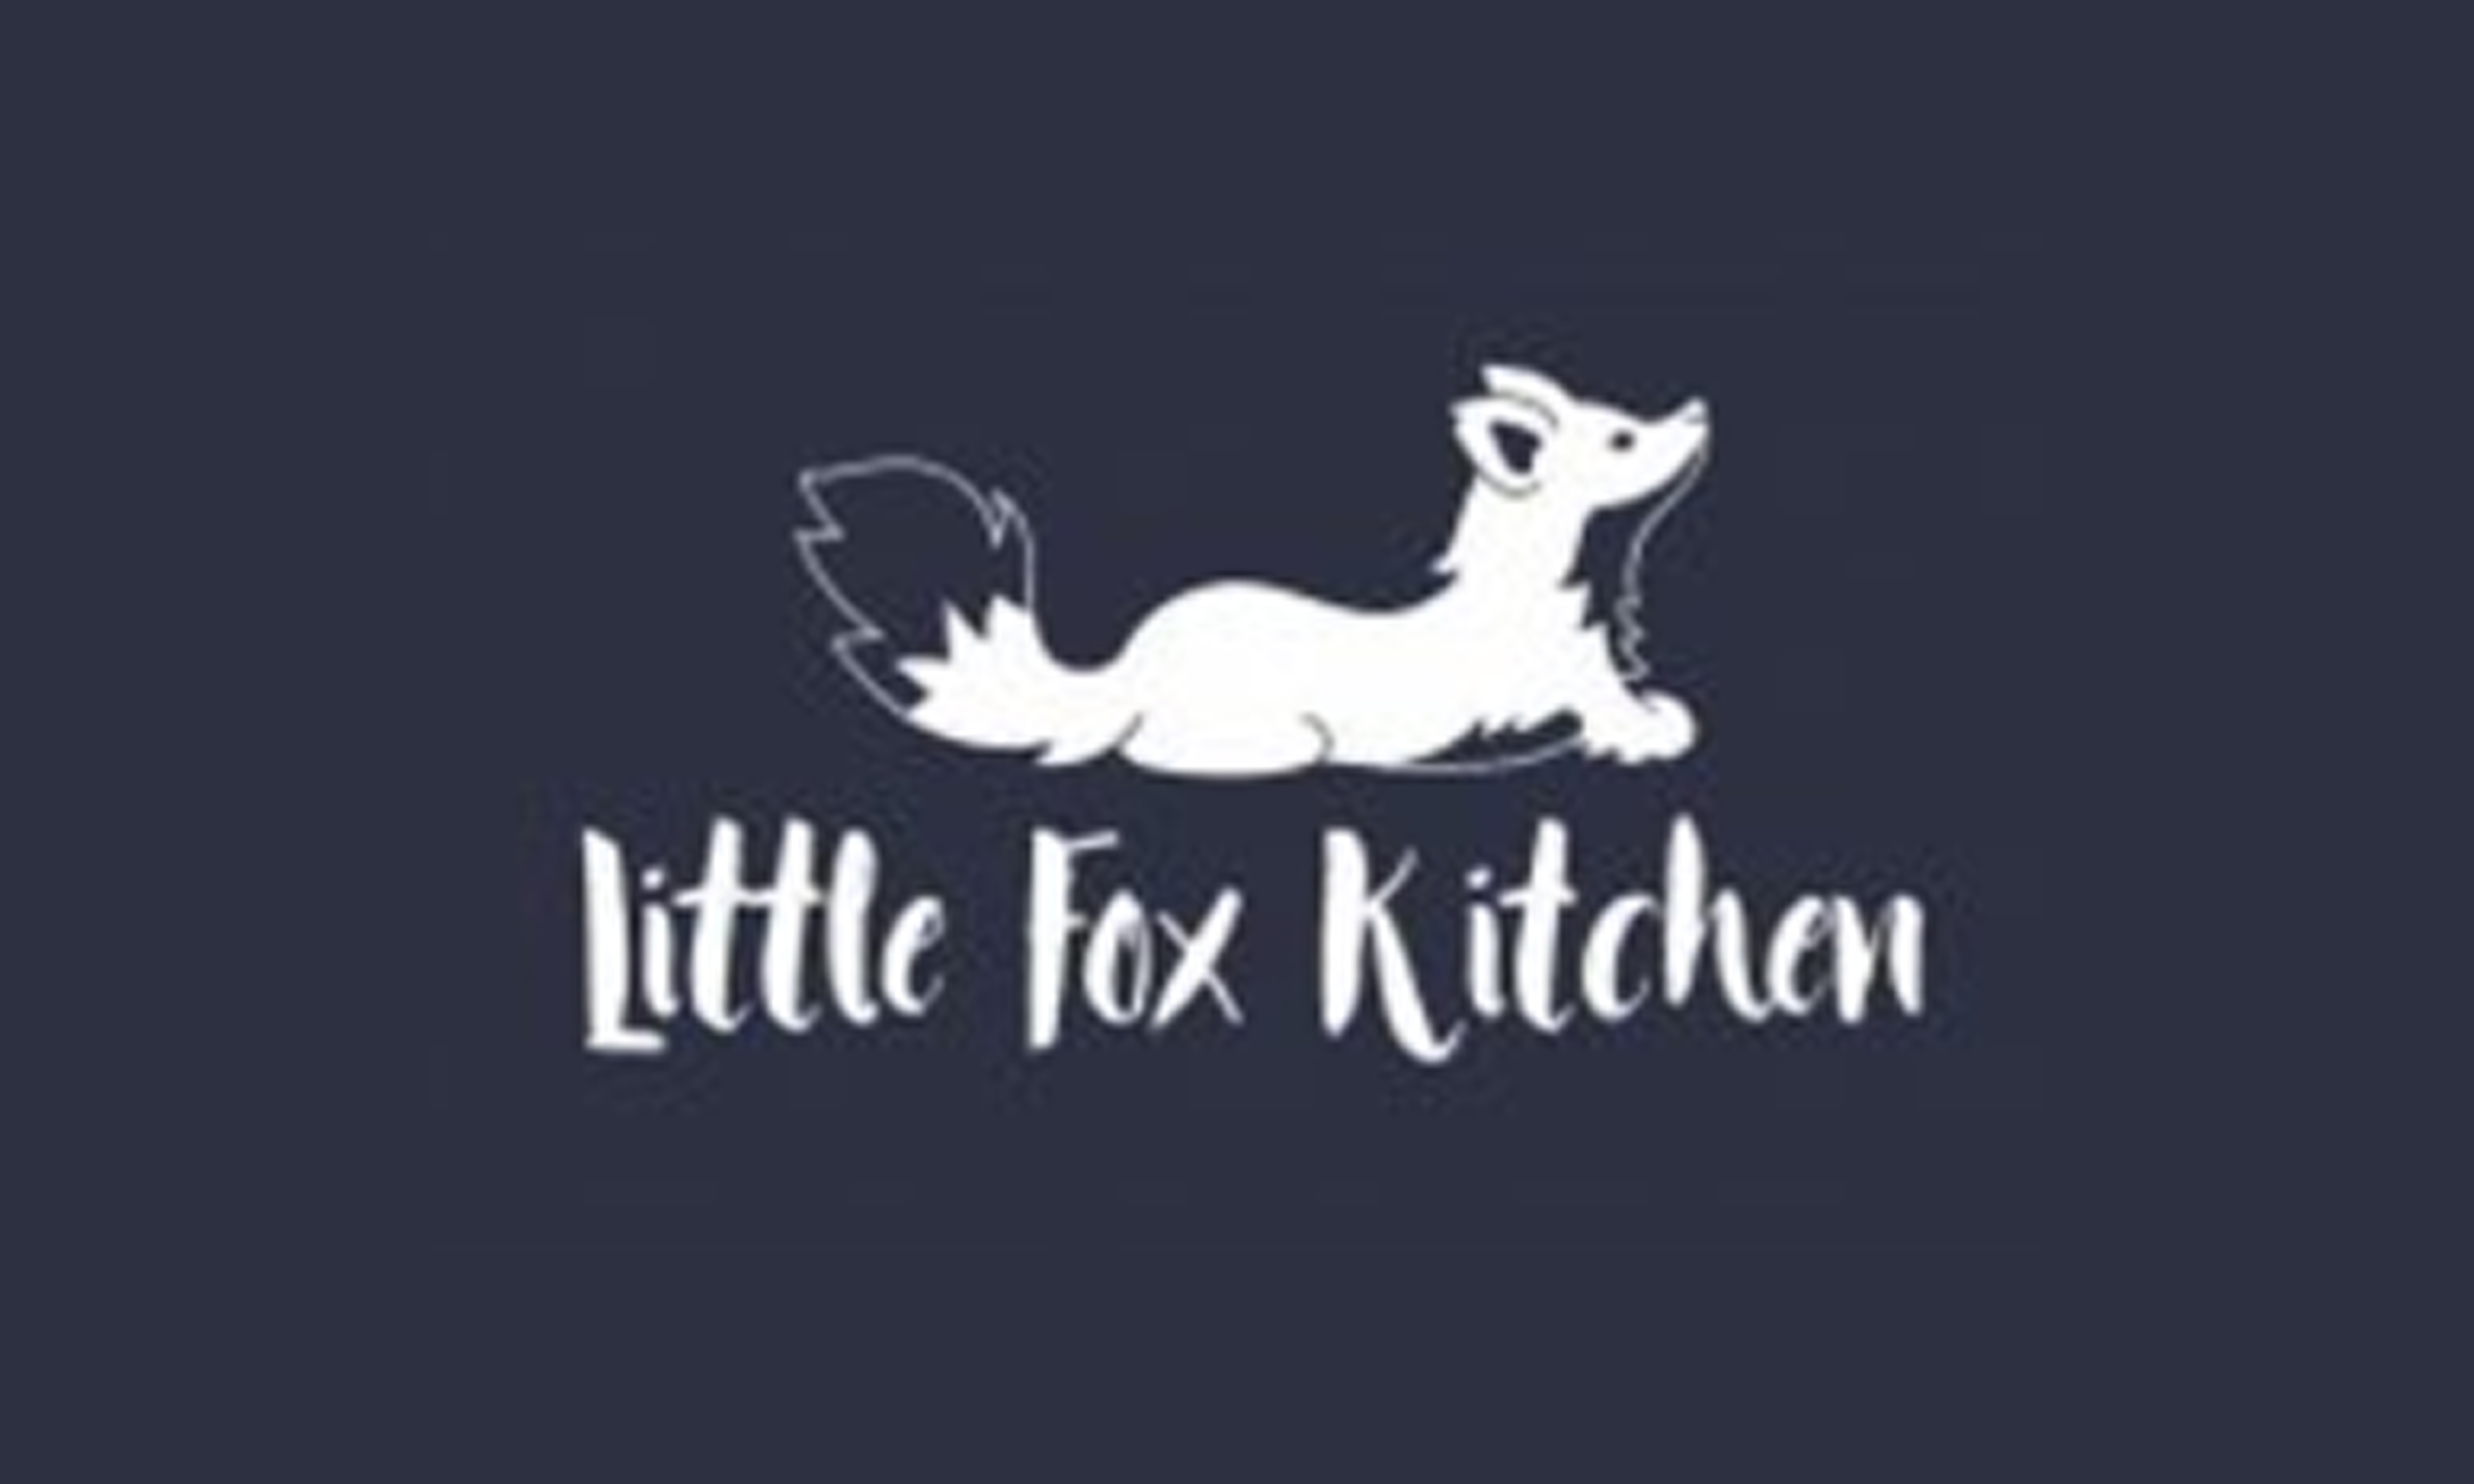 Little Fox Kitchen